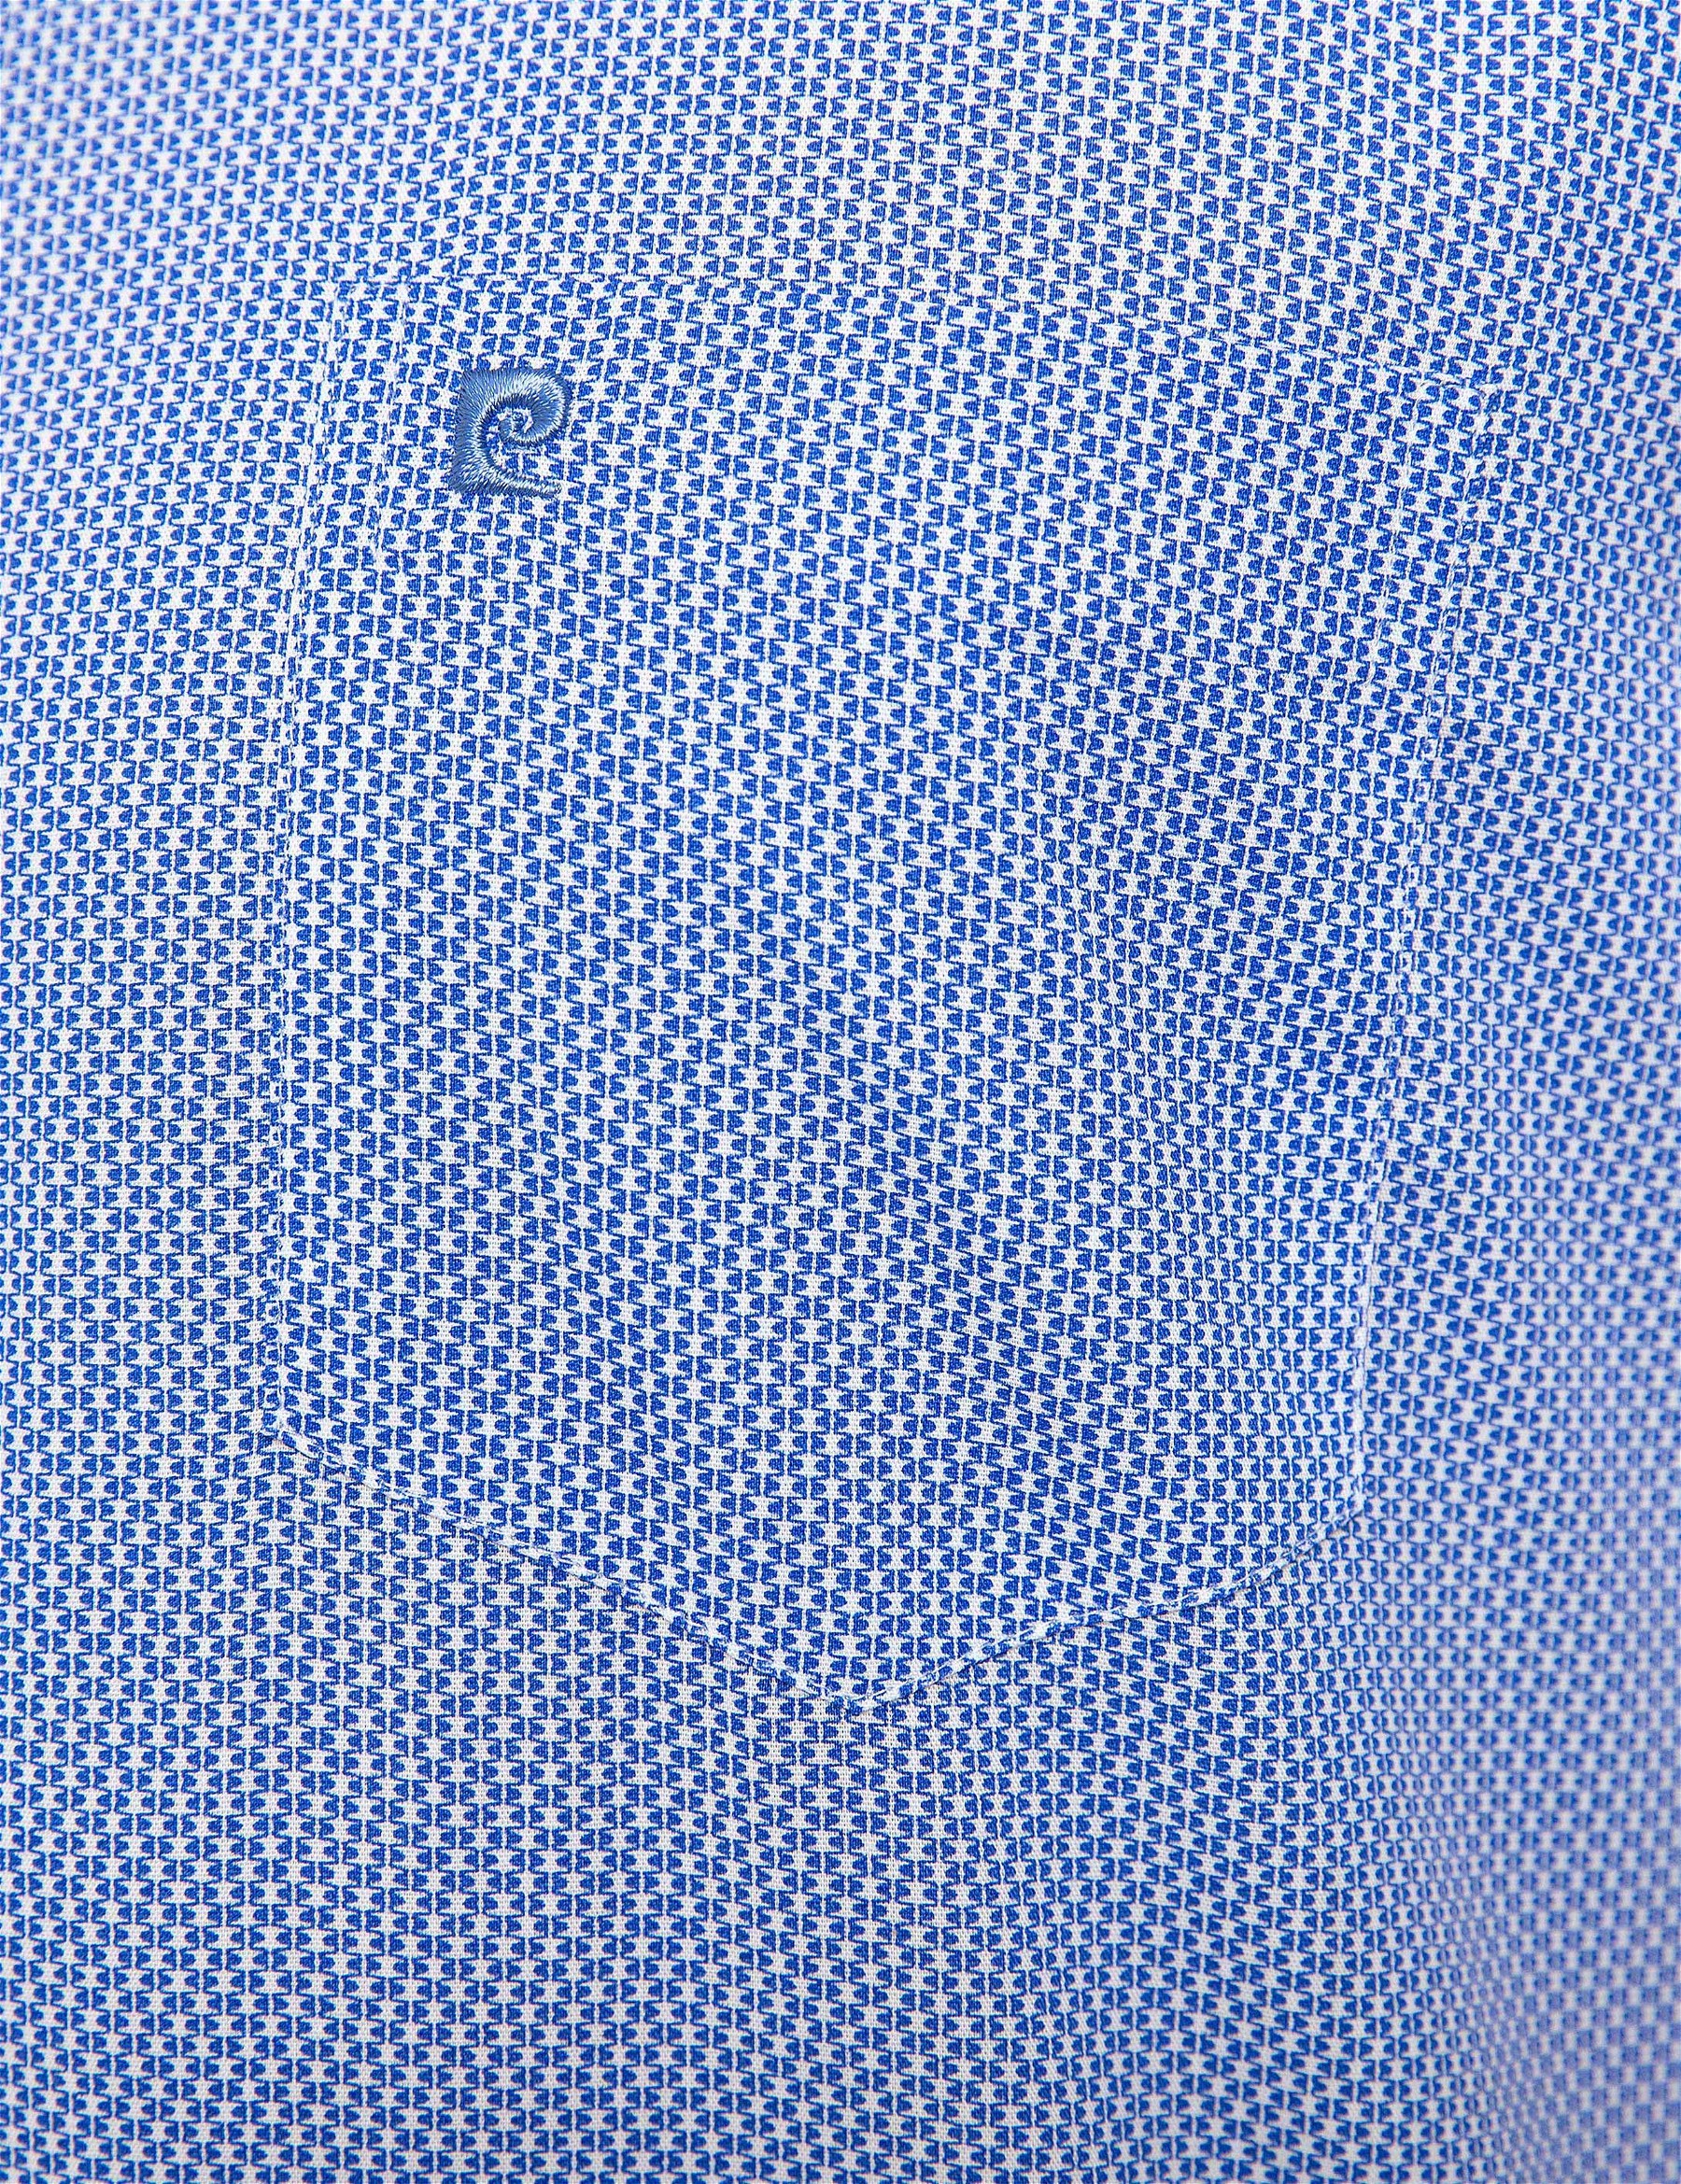 Mavi Regular Fit Kısa Kollu Gömlek